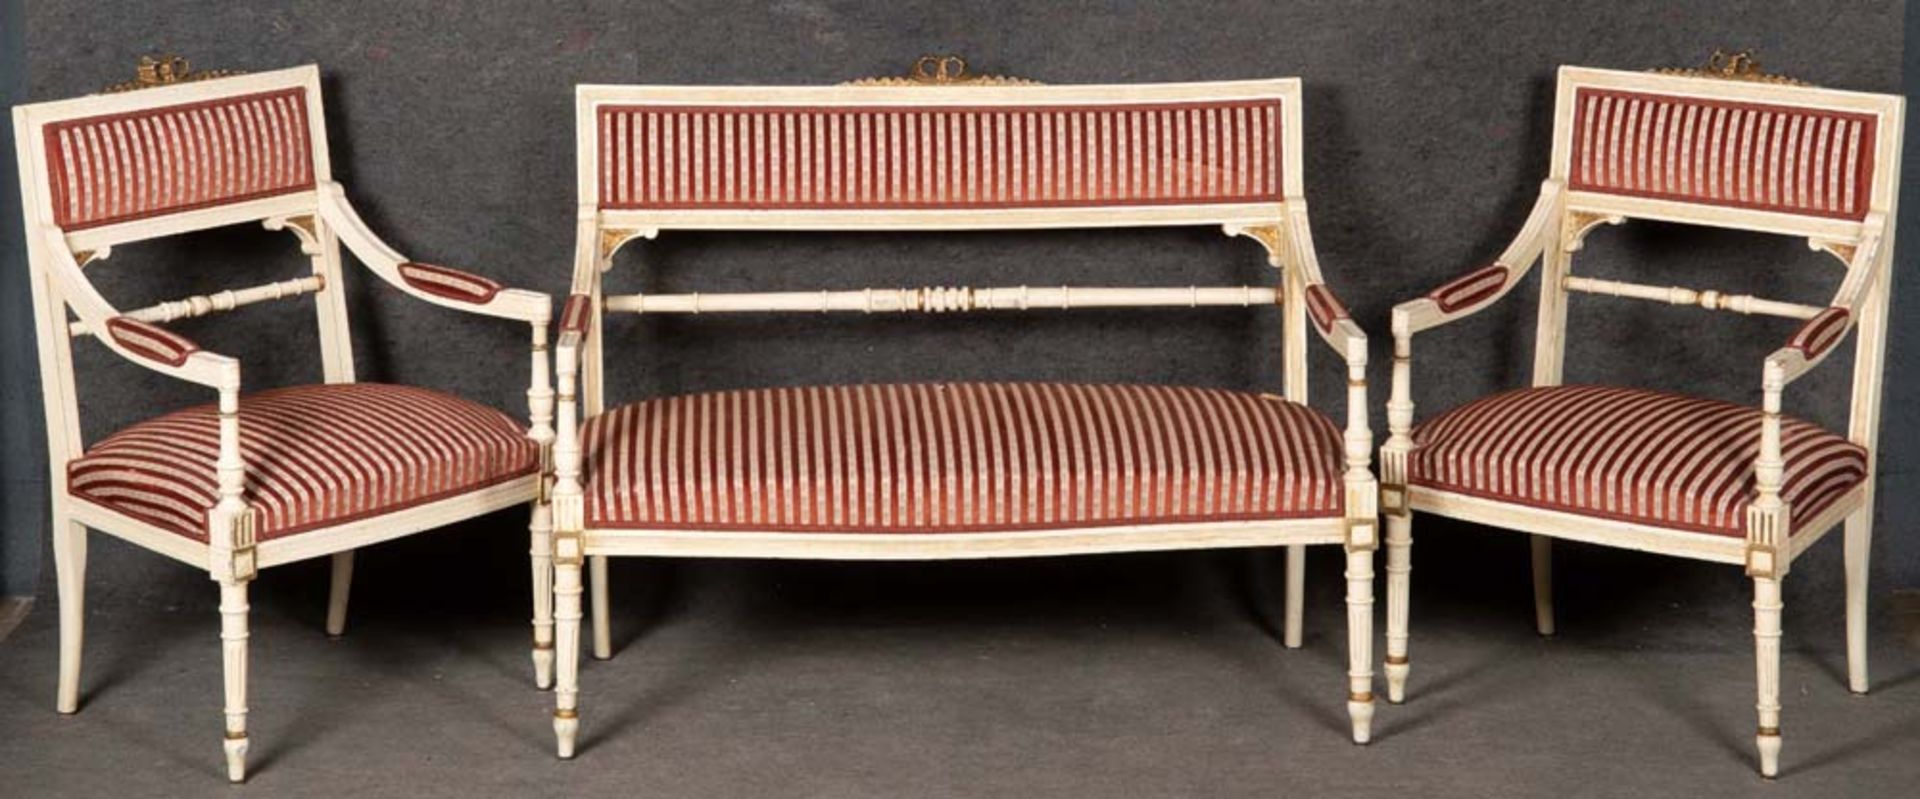 Dreitlge. Sitzgarnitur. Schweiz um 1900. Bestehend aus: Zwei Sessel und eine Sitzbank (B=115 cm).